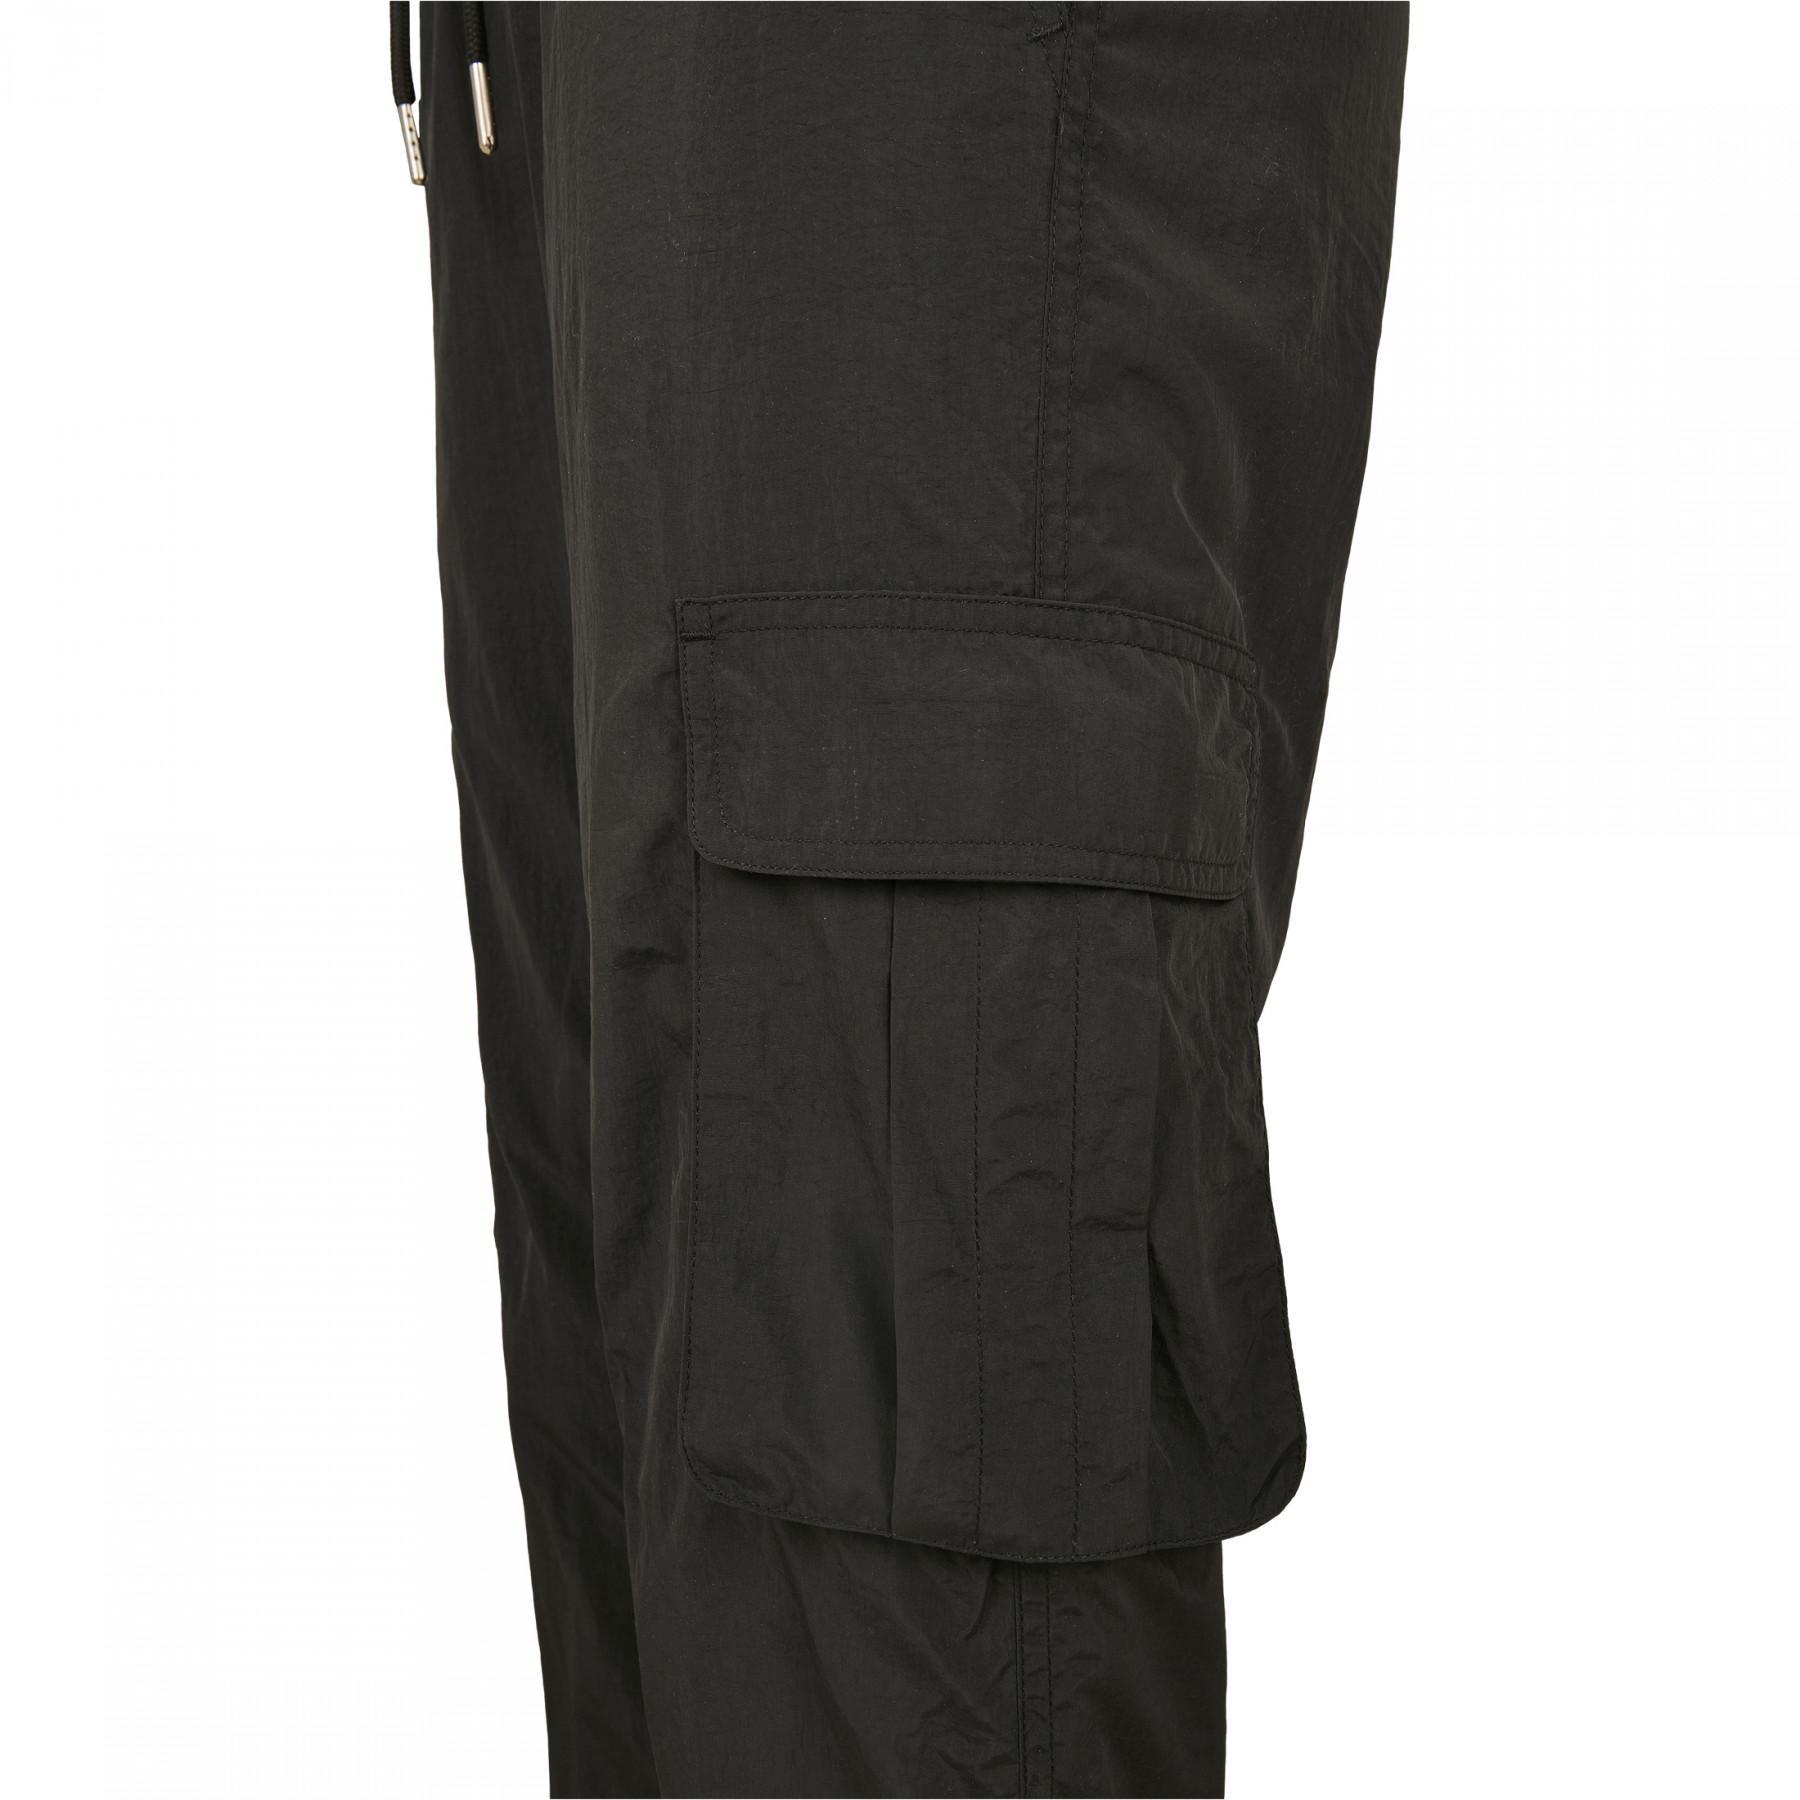 Spodnie damskie Urban Classics wysoka talia crinkle nylon cargo (duże rozmiary)